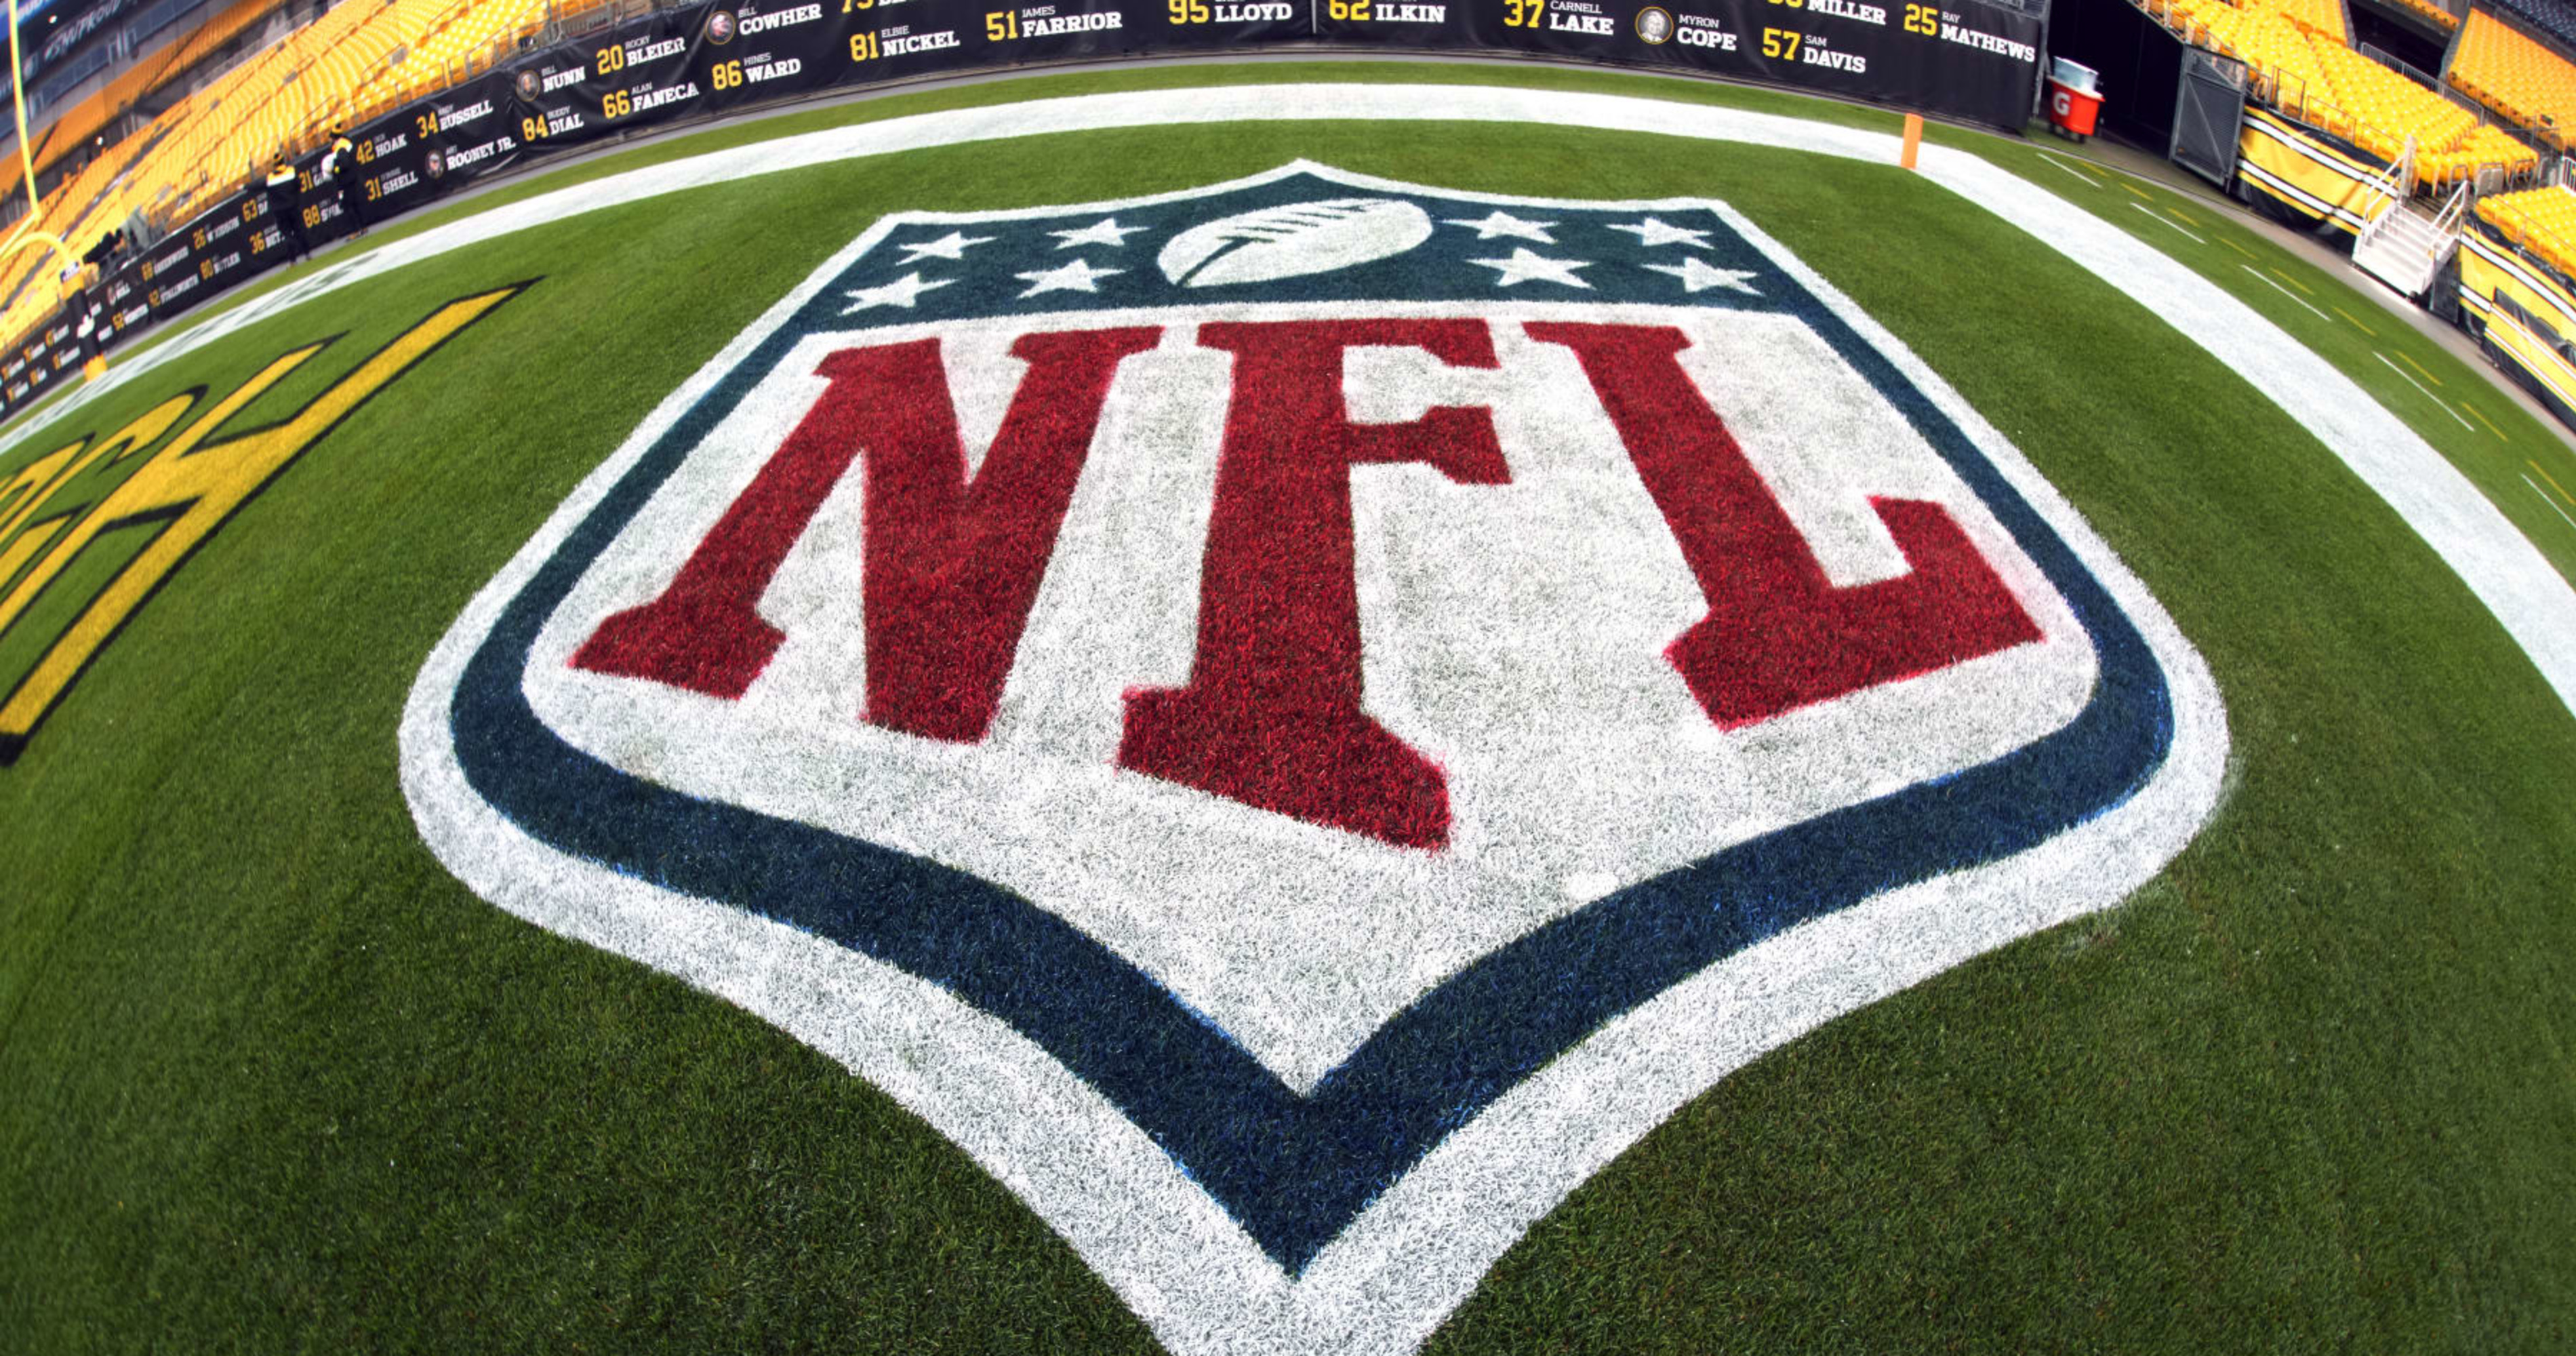 TV, Warner Bros. offer Max-NFL Sunday Ticket package